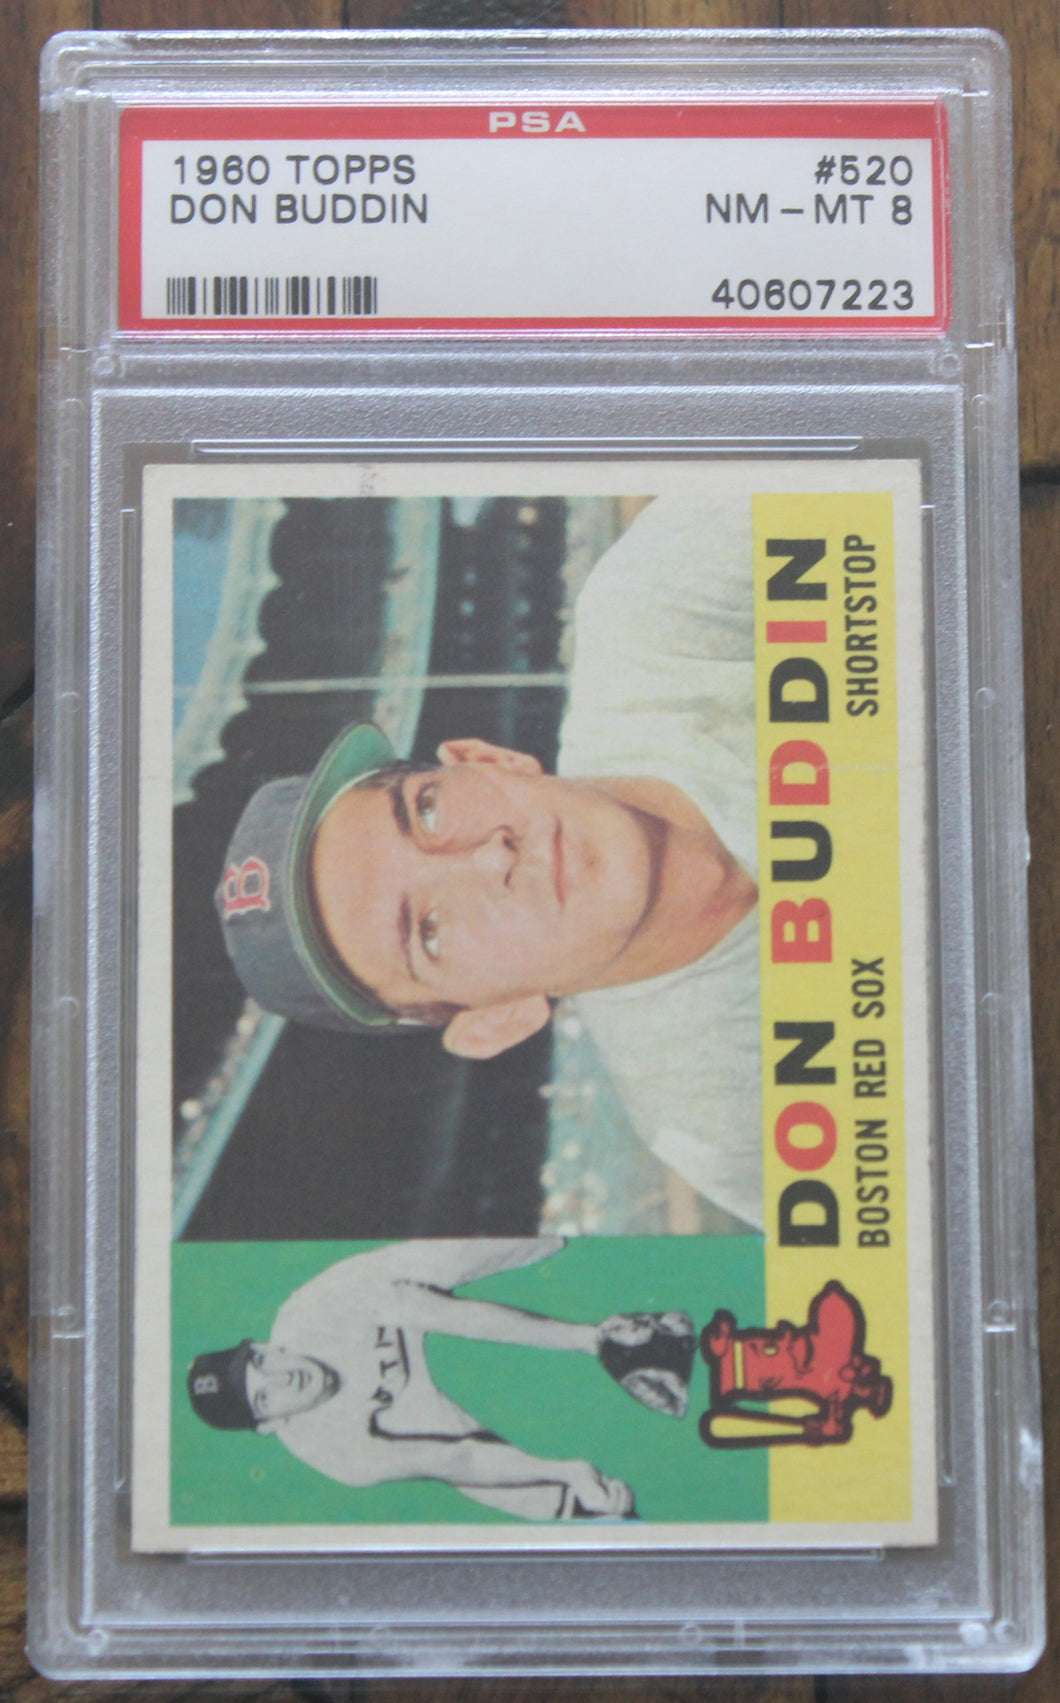 1960 Topps Don Buddin #520 PSA NM-MT 8